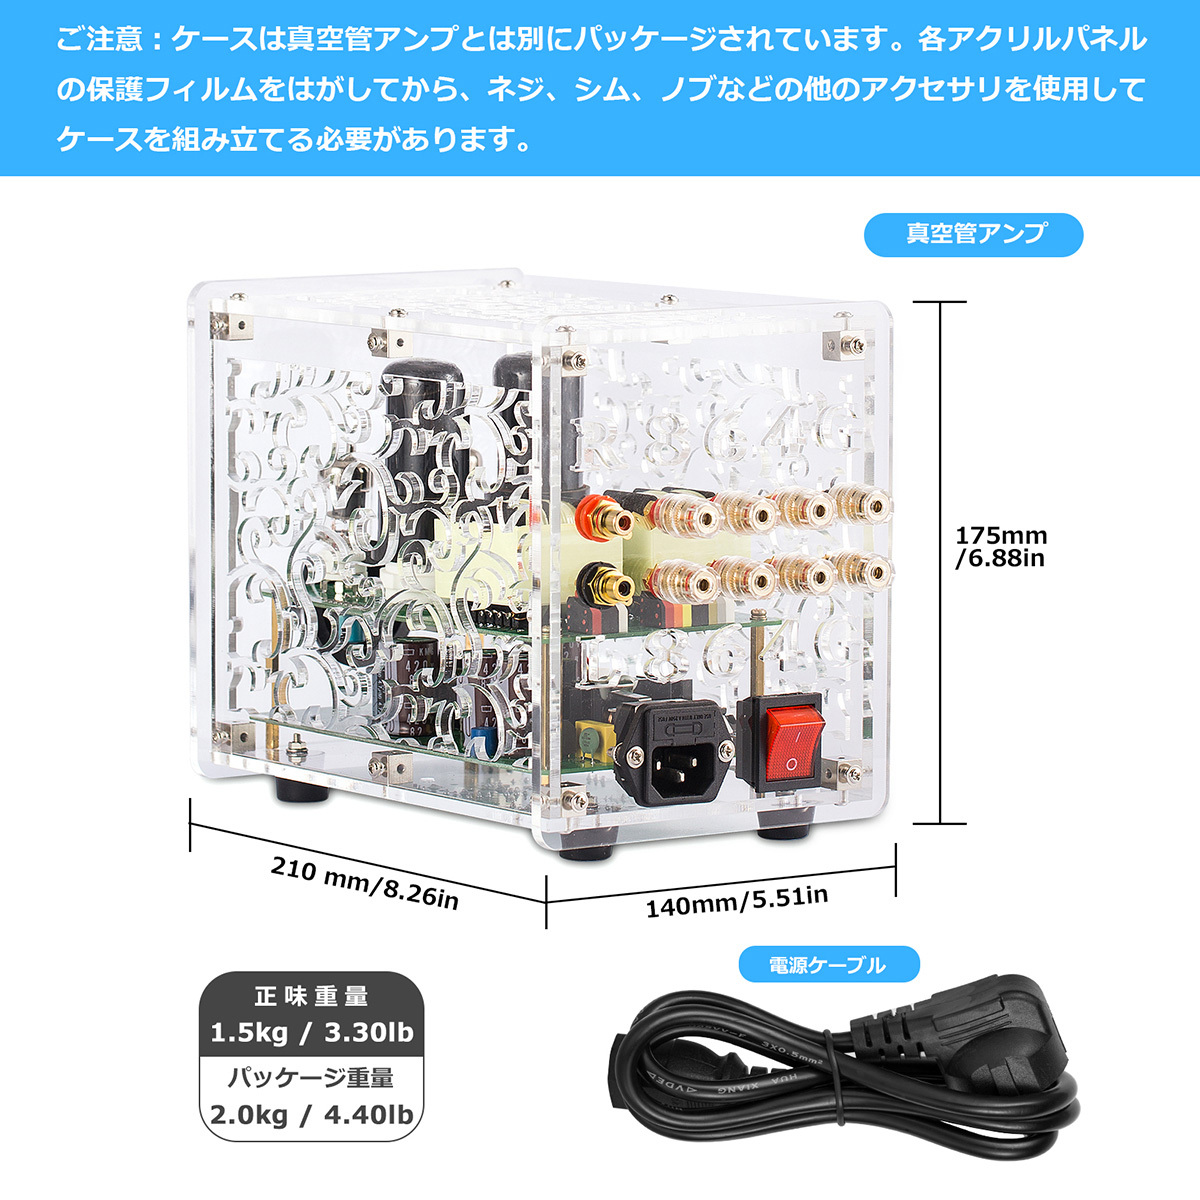 店舗安いFELICIA 、shin-eiのパーツで組まれた小型真空管アンプ恐らくteisco!? コンボ